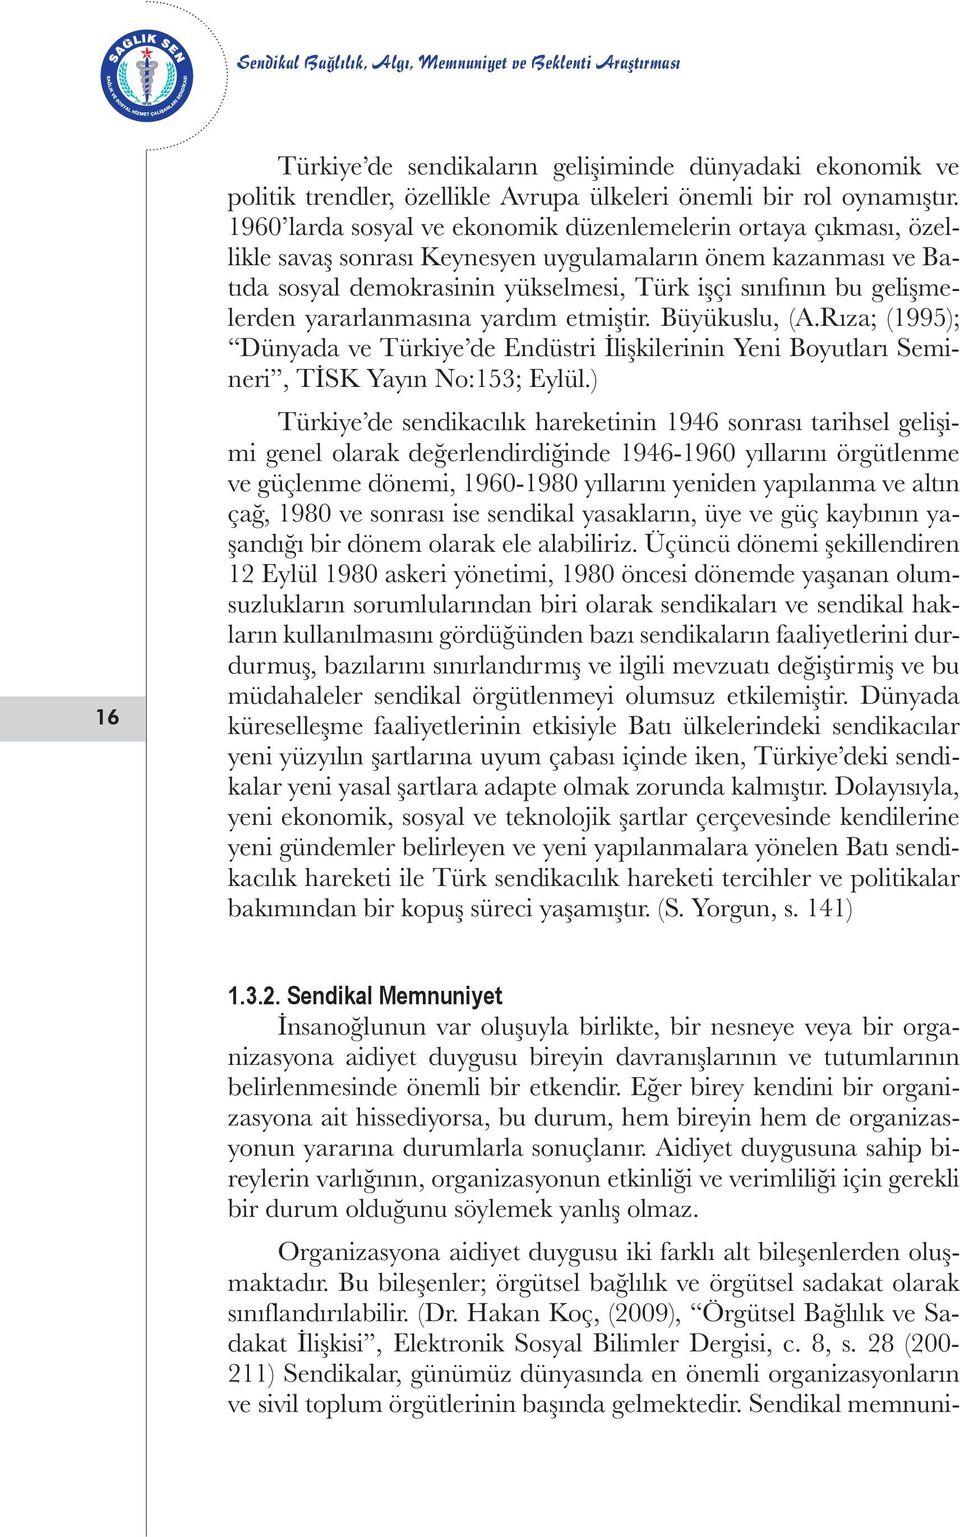 gelişmelerden yararlanmasına yardım etmiştir. Büyükuslu, (A.Rıza; (1995); Dünyada ve Türkiye de Endüstri İlişkilerinin Yeni Boyutları Semineri, TİSK Yayın No:153; Eylül.